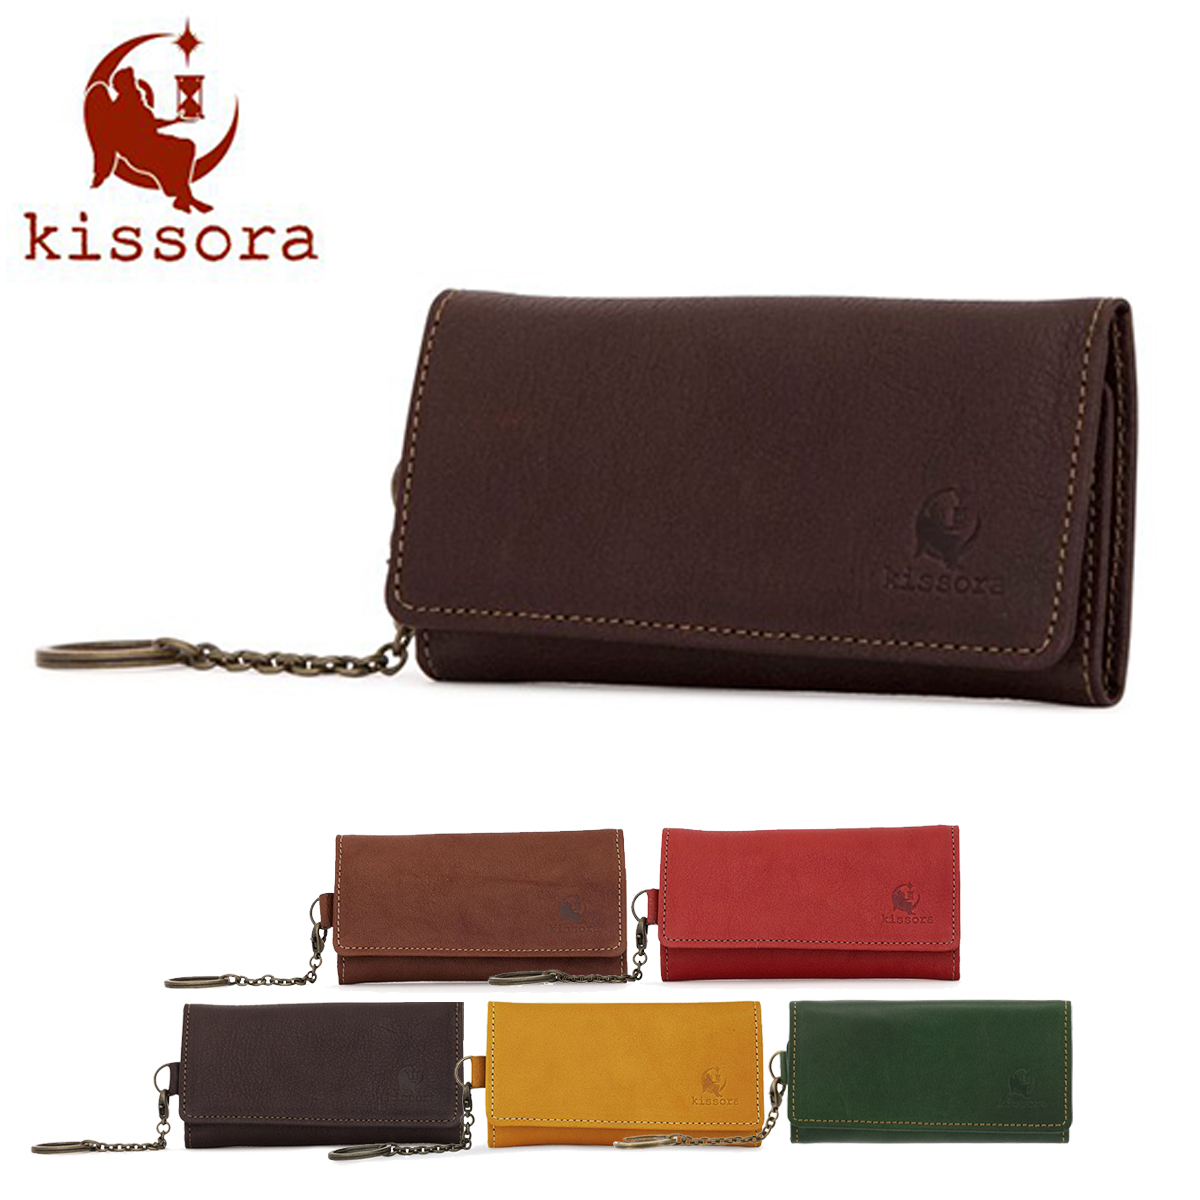 ファッションなデザイン キソラ 期間限定 kissora キーケース 送料無料 レディース KIPT-055 セラゾール 本革 革 レザー